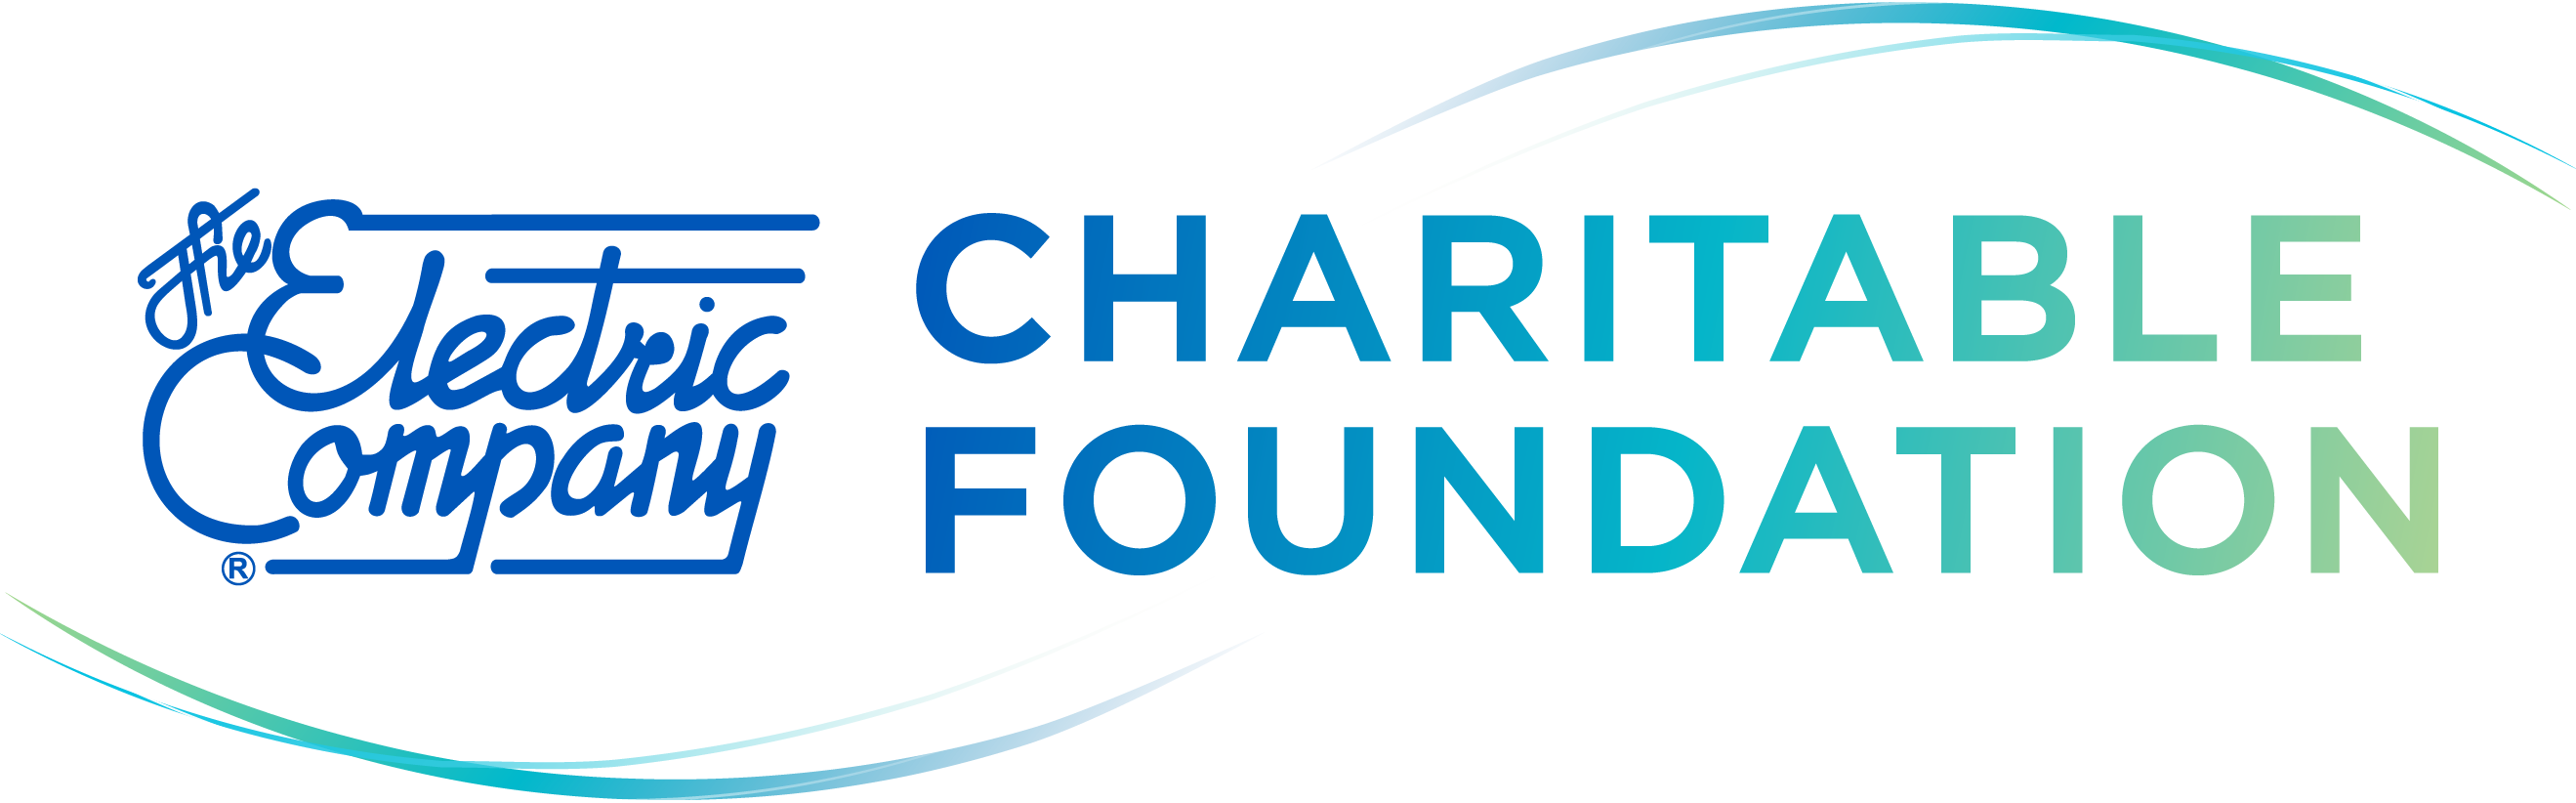 El Paso Electric Charitable Foundation